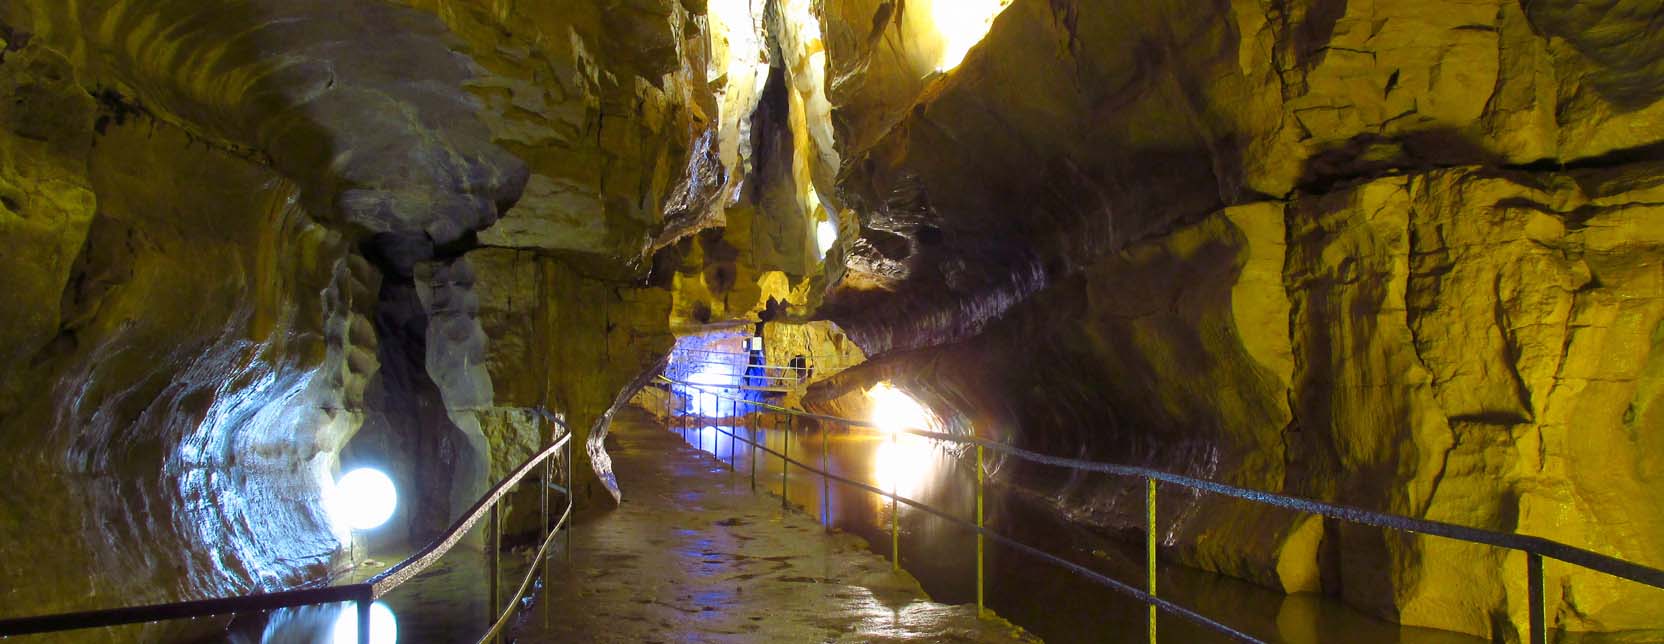 39  grottes de   BAUME LES MESSIEURS  bloc de 10 photos 